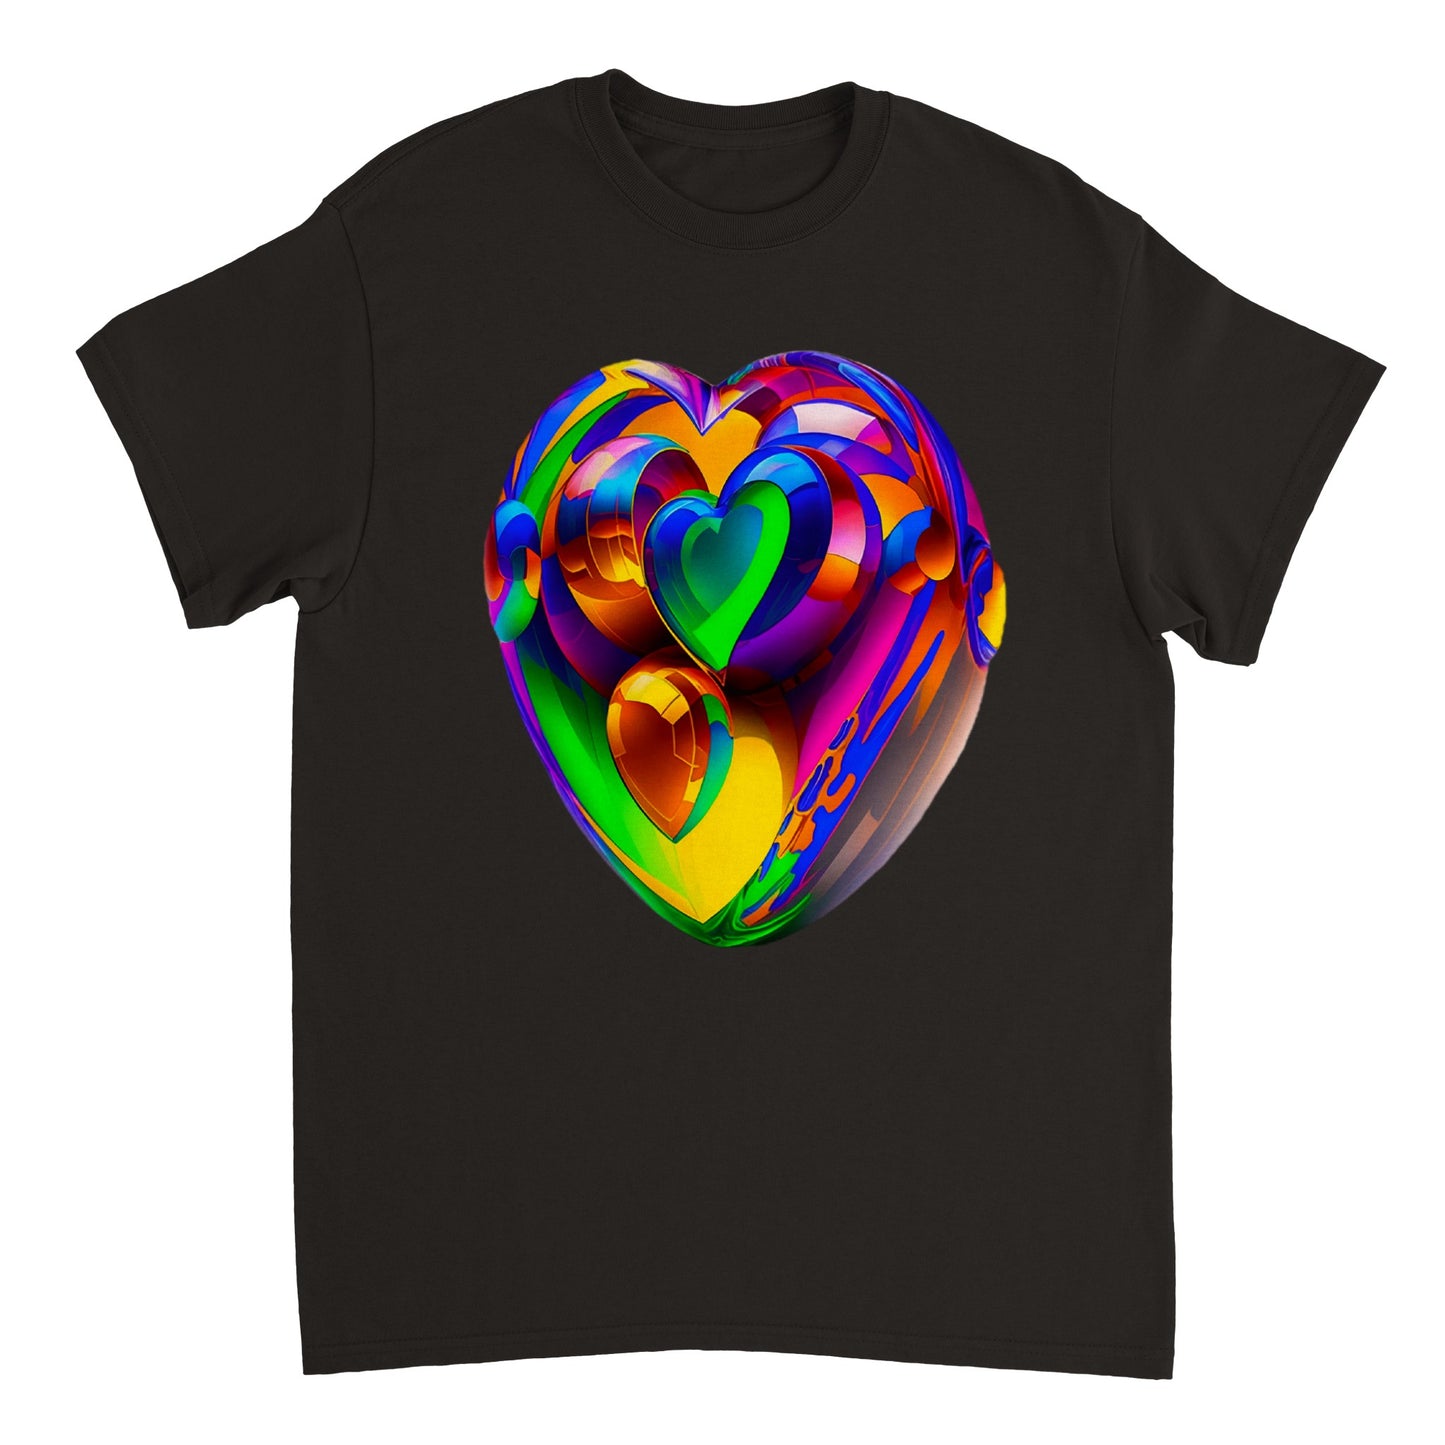 Love Heart - Heavyweight Unisex Crewneck T-shirt 54